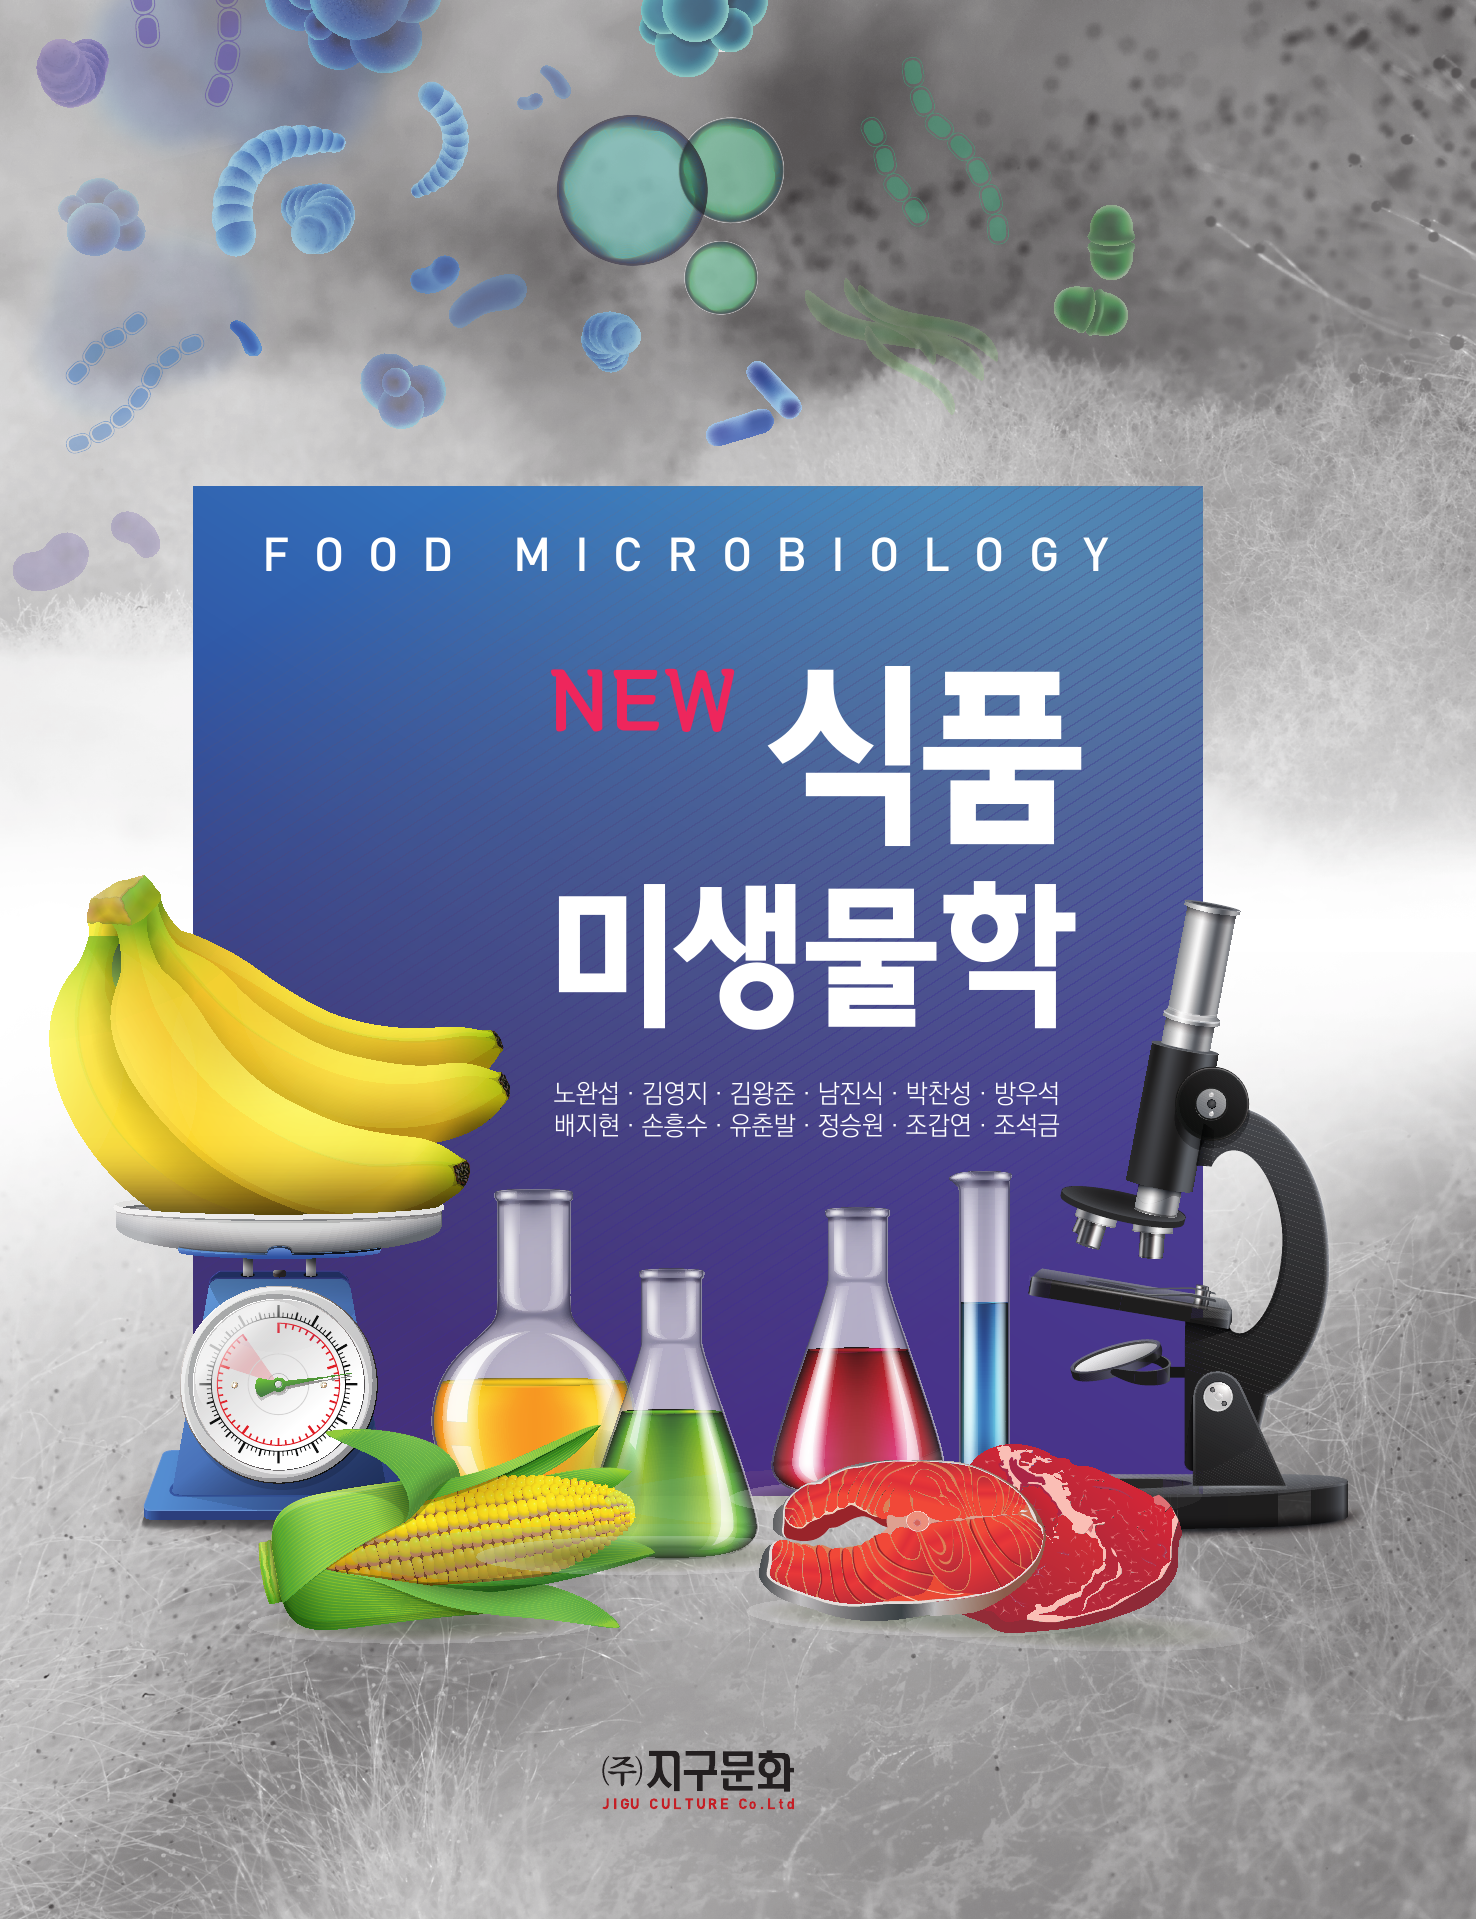 New	식품미생물학